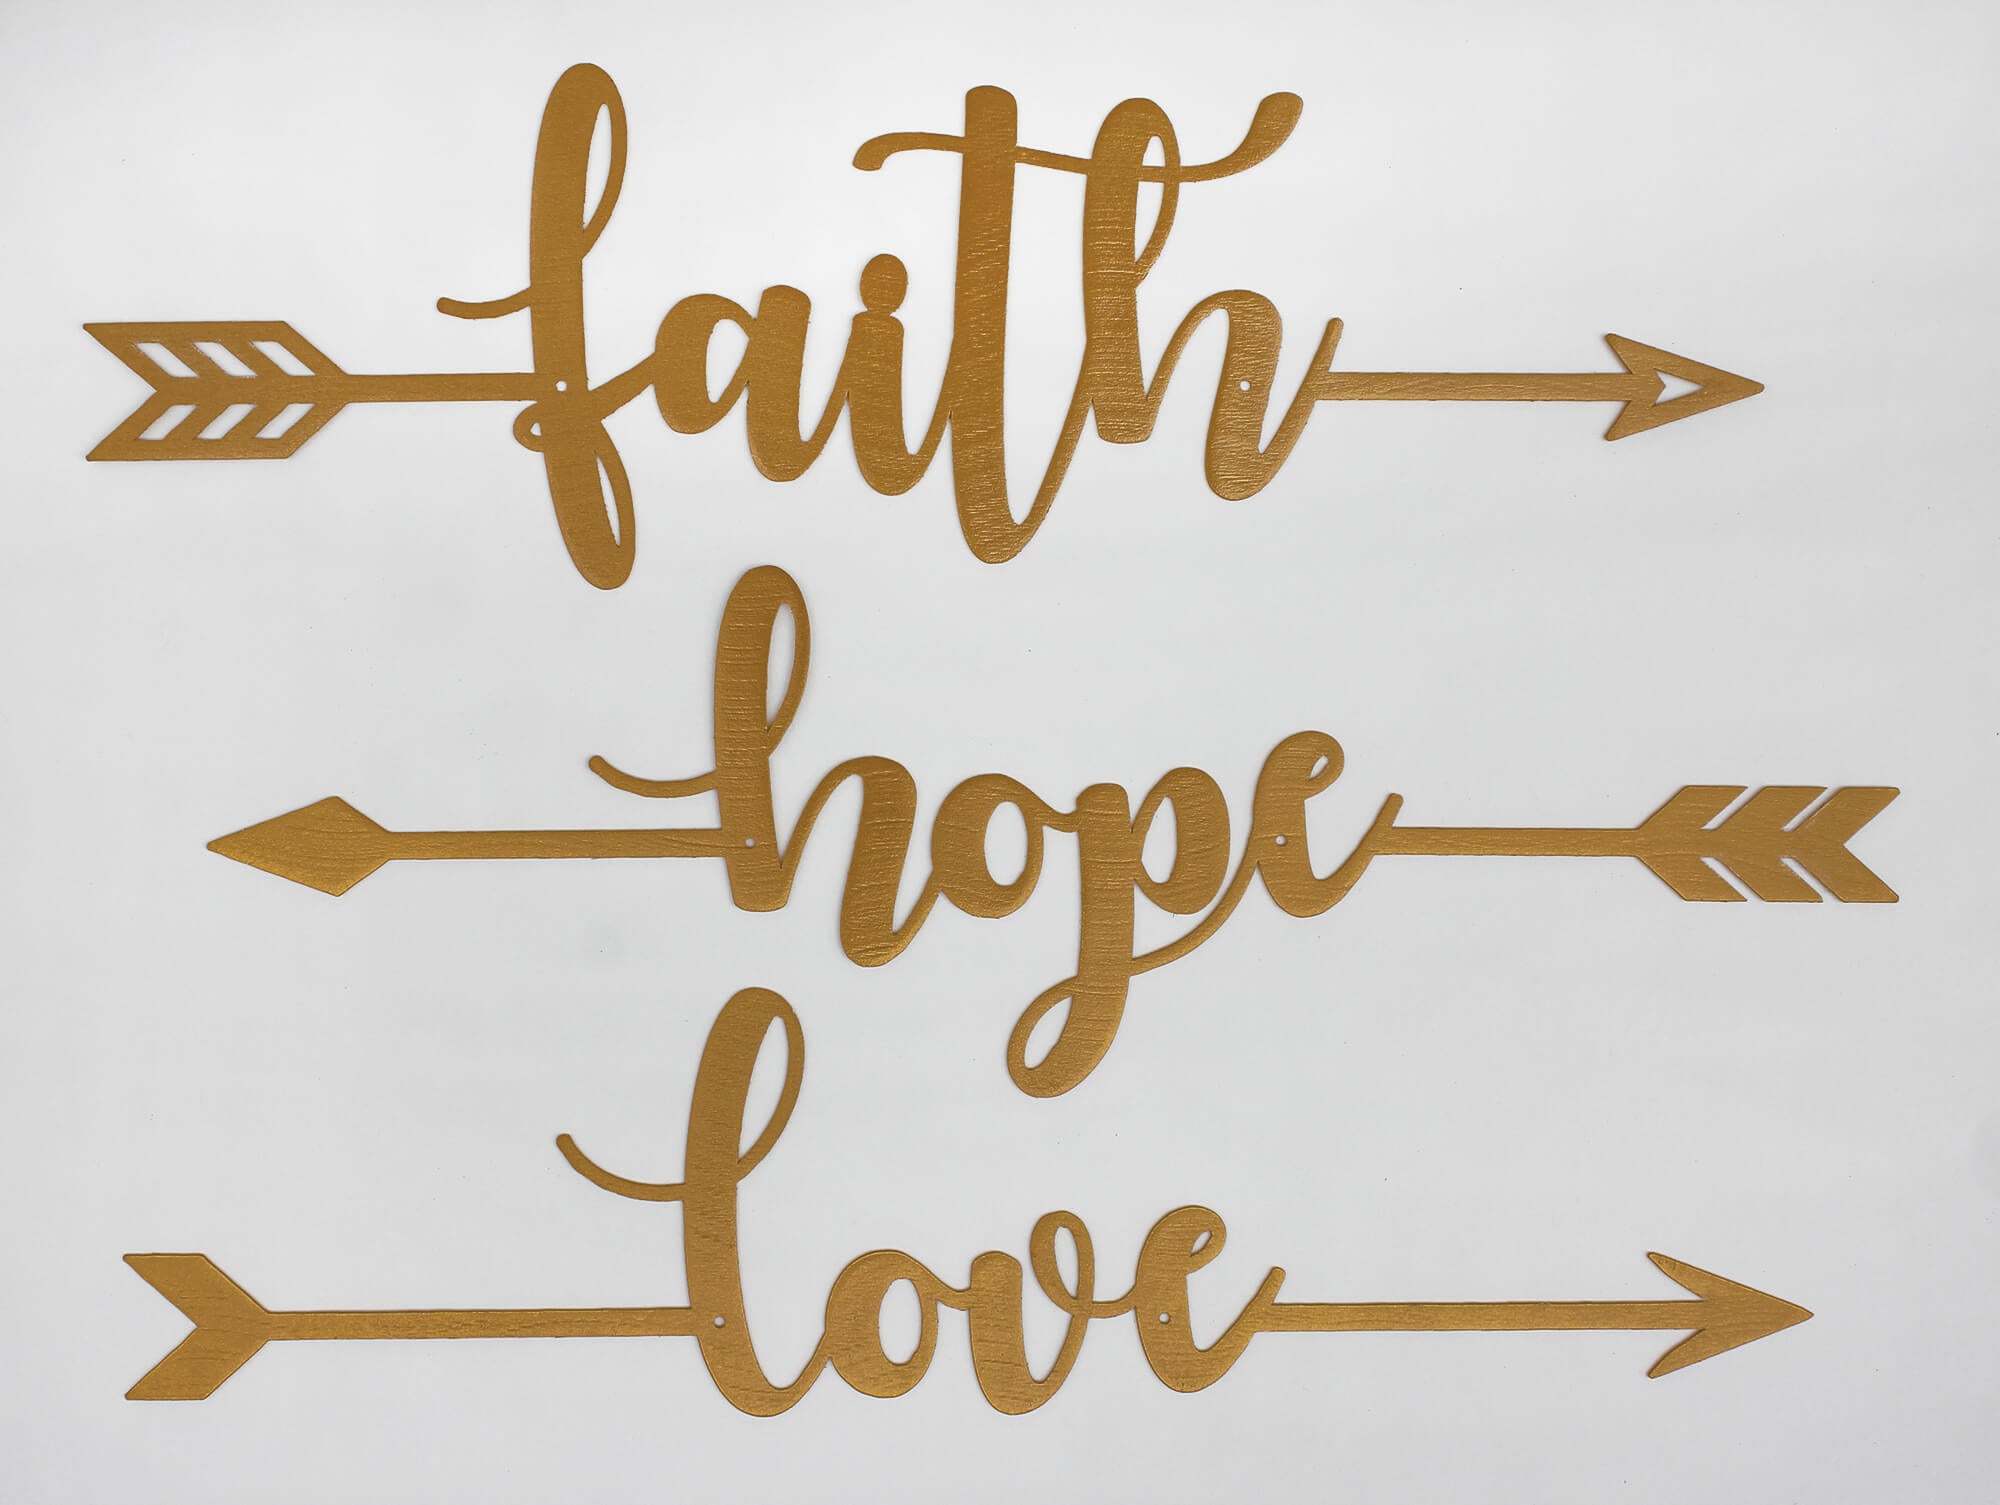 faith and hope